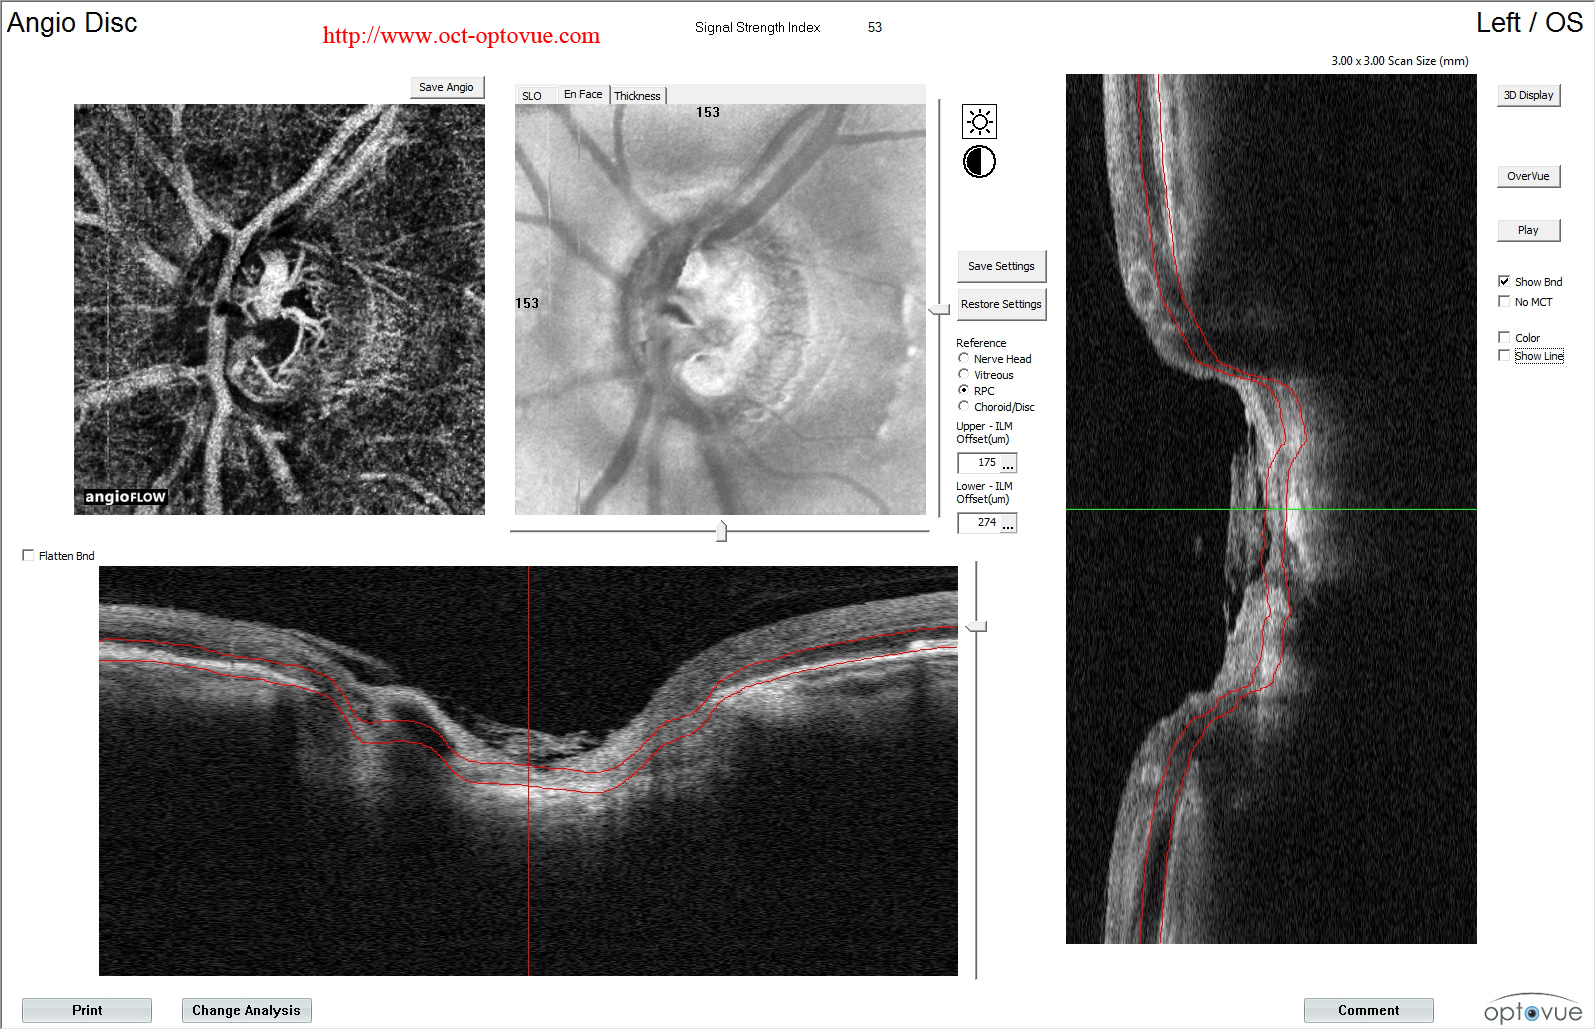 octa glaucoma disease cecite jean-michel muratet